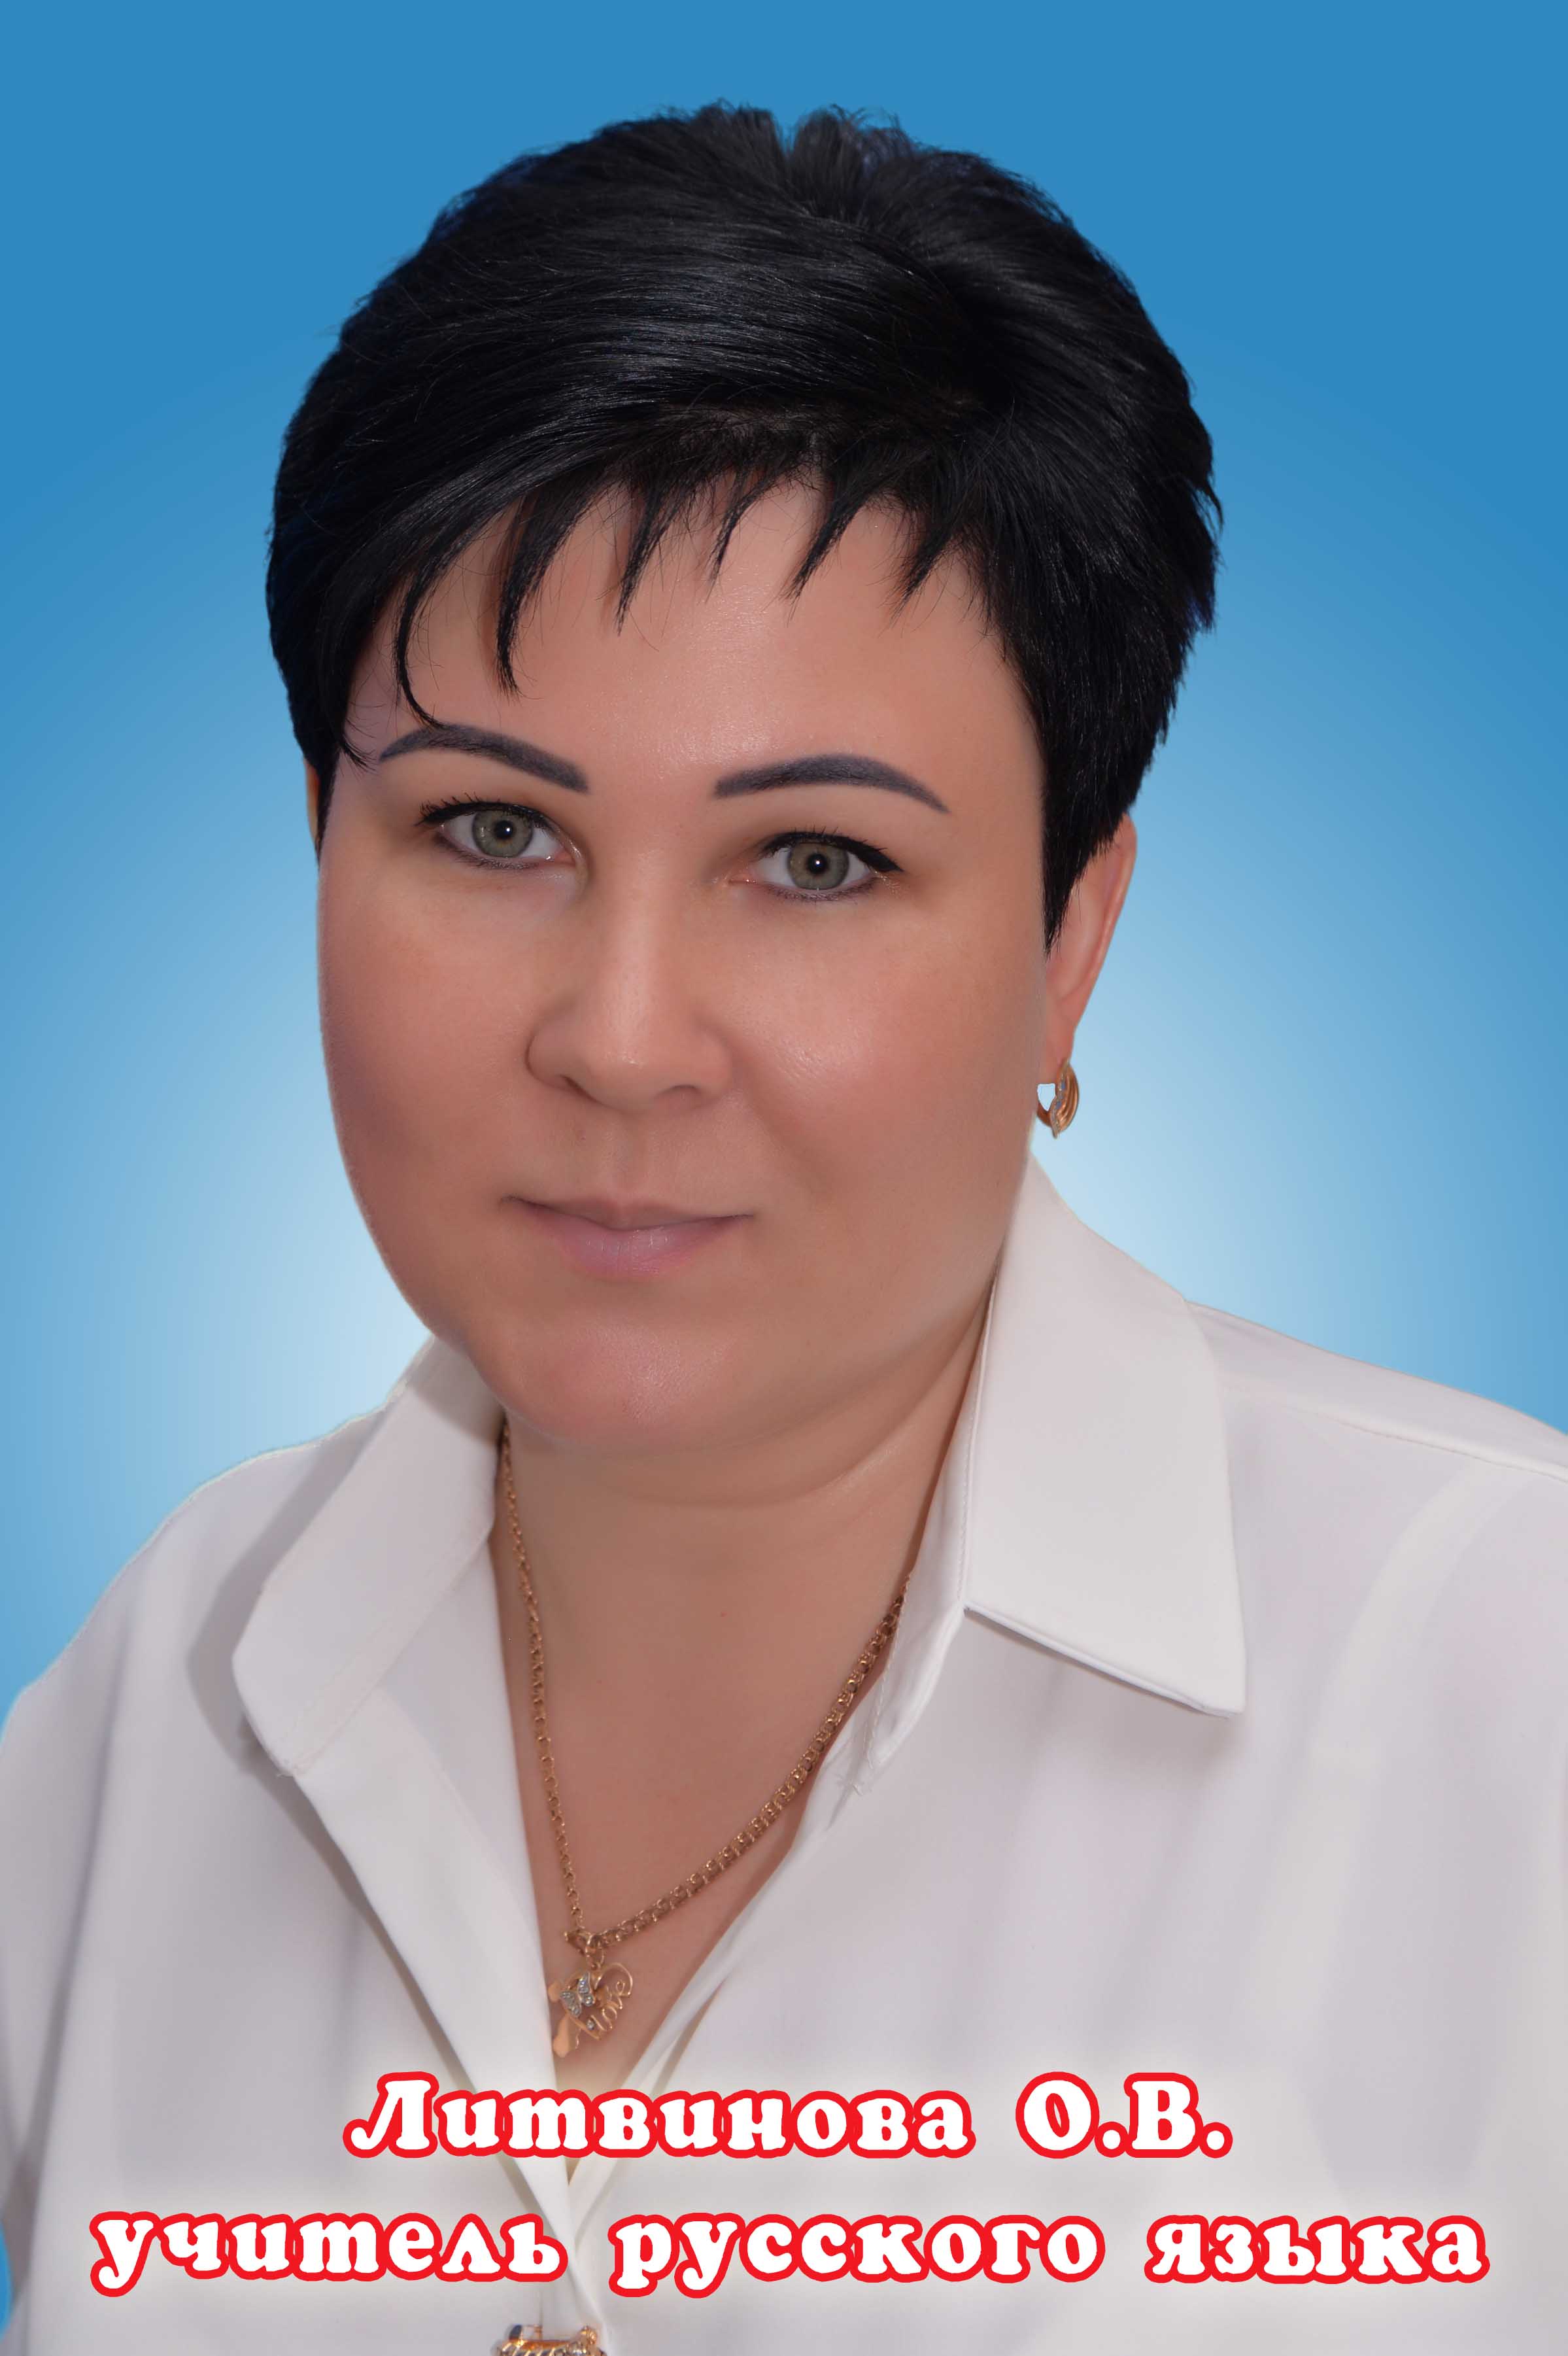 Литвинова Ольга Васильевна.